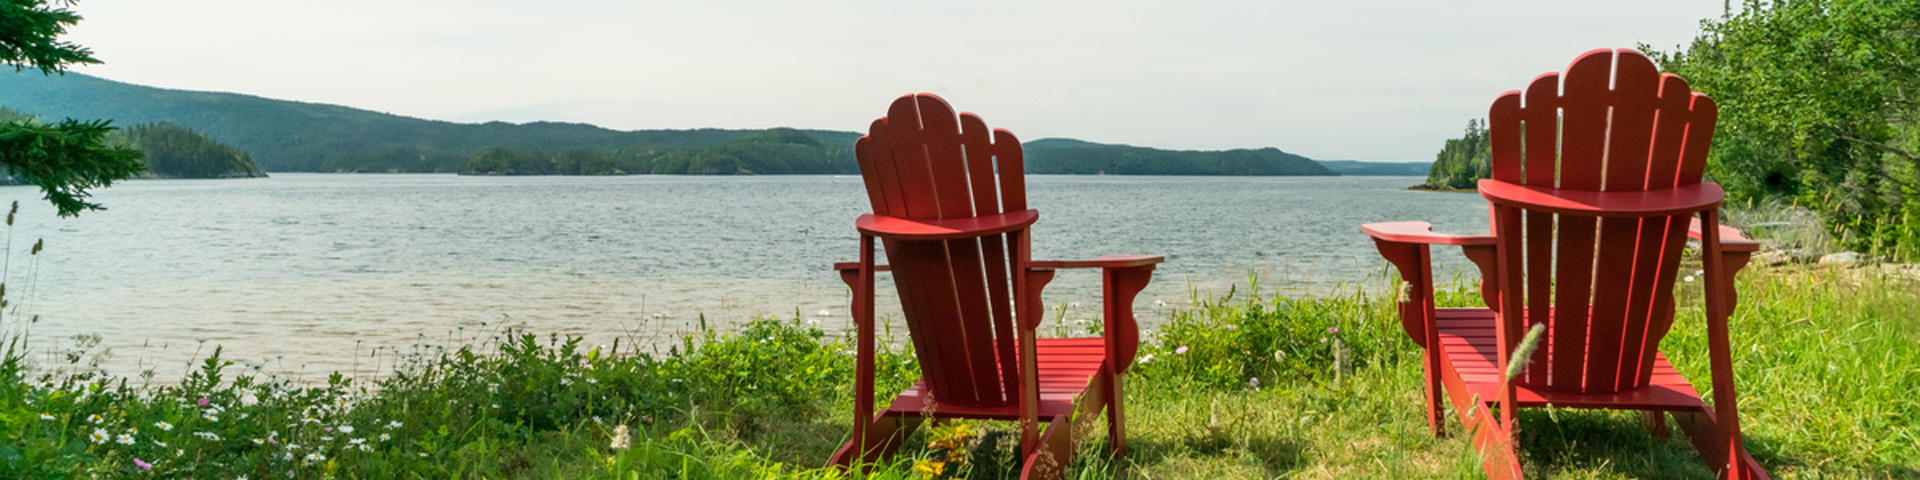 deux chaises Adirondack rouges donnant sur un bras de mer